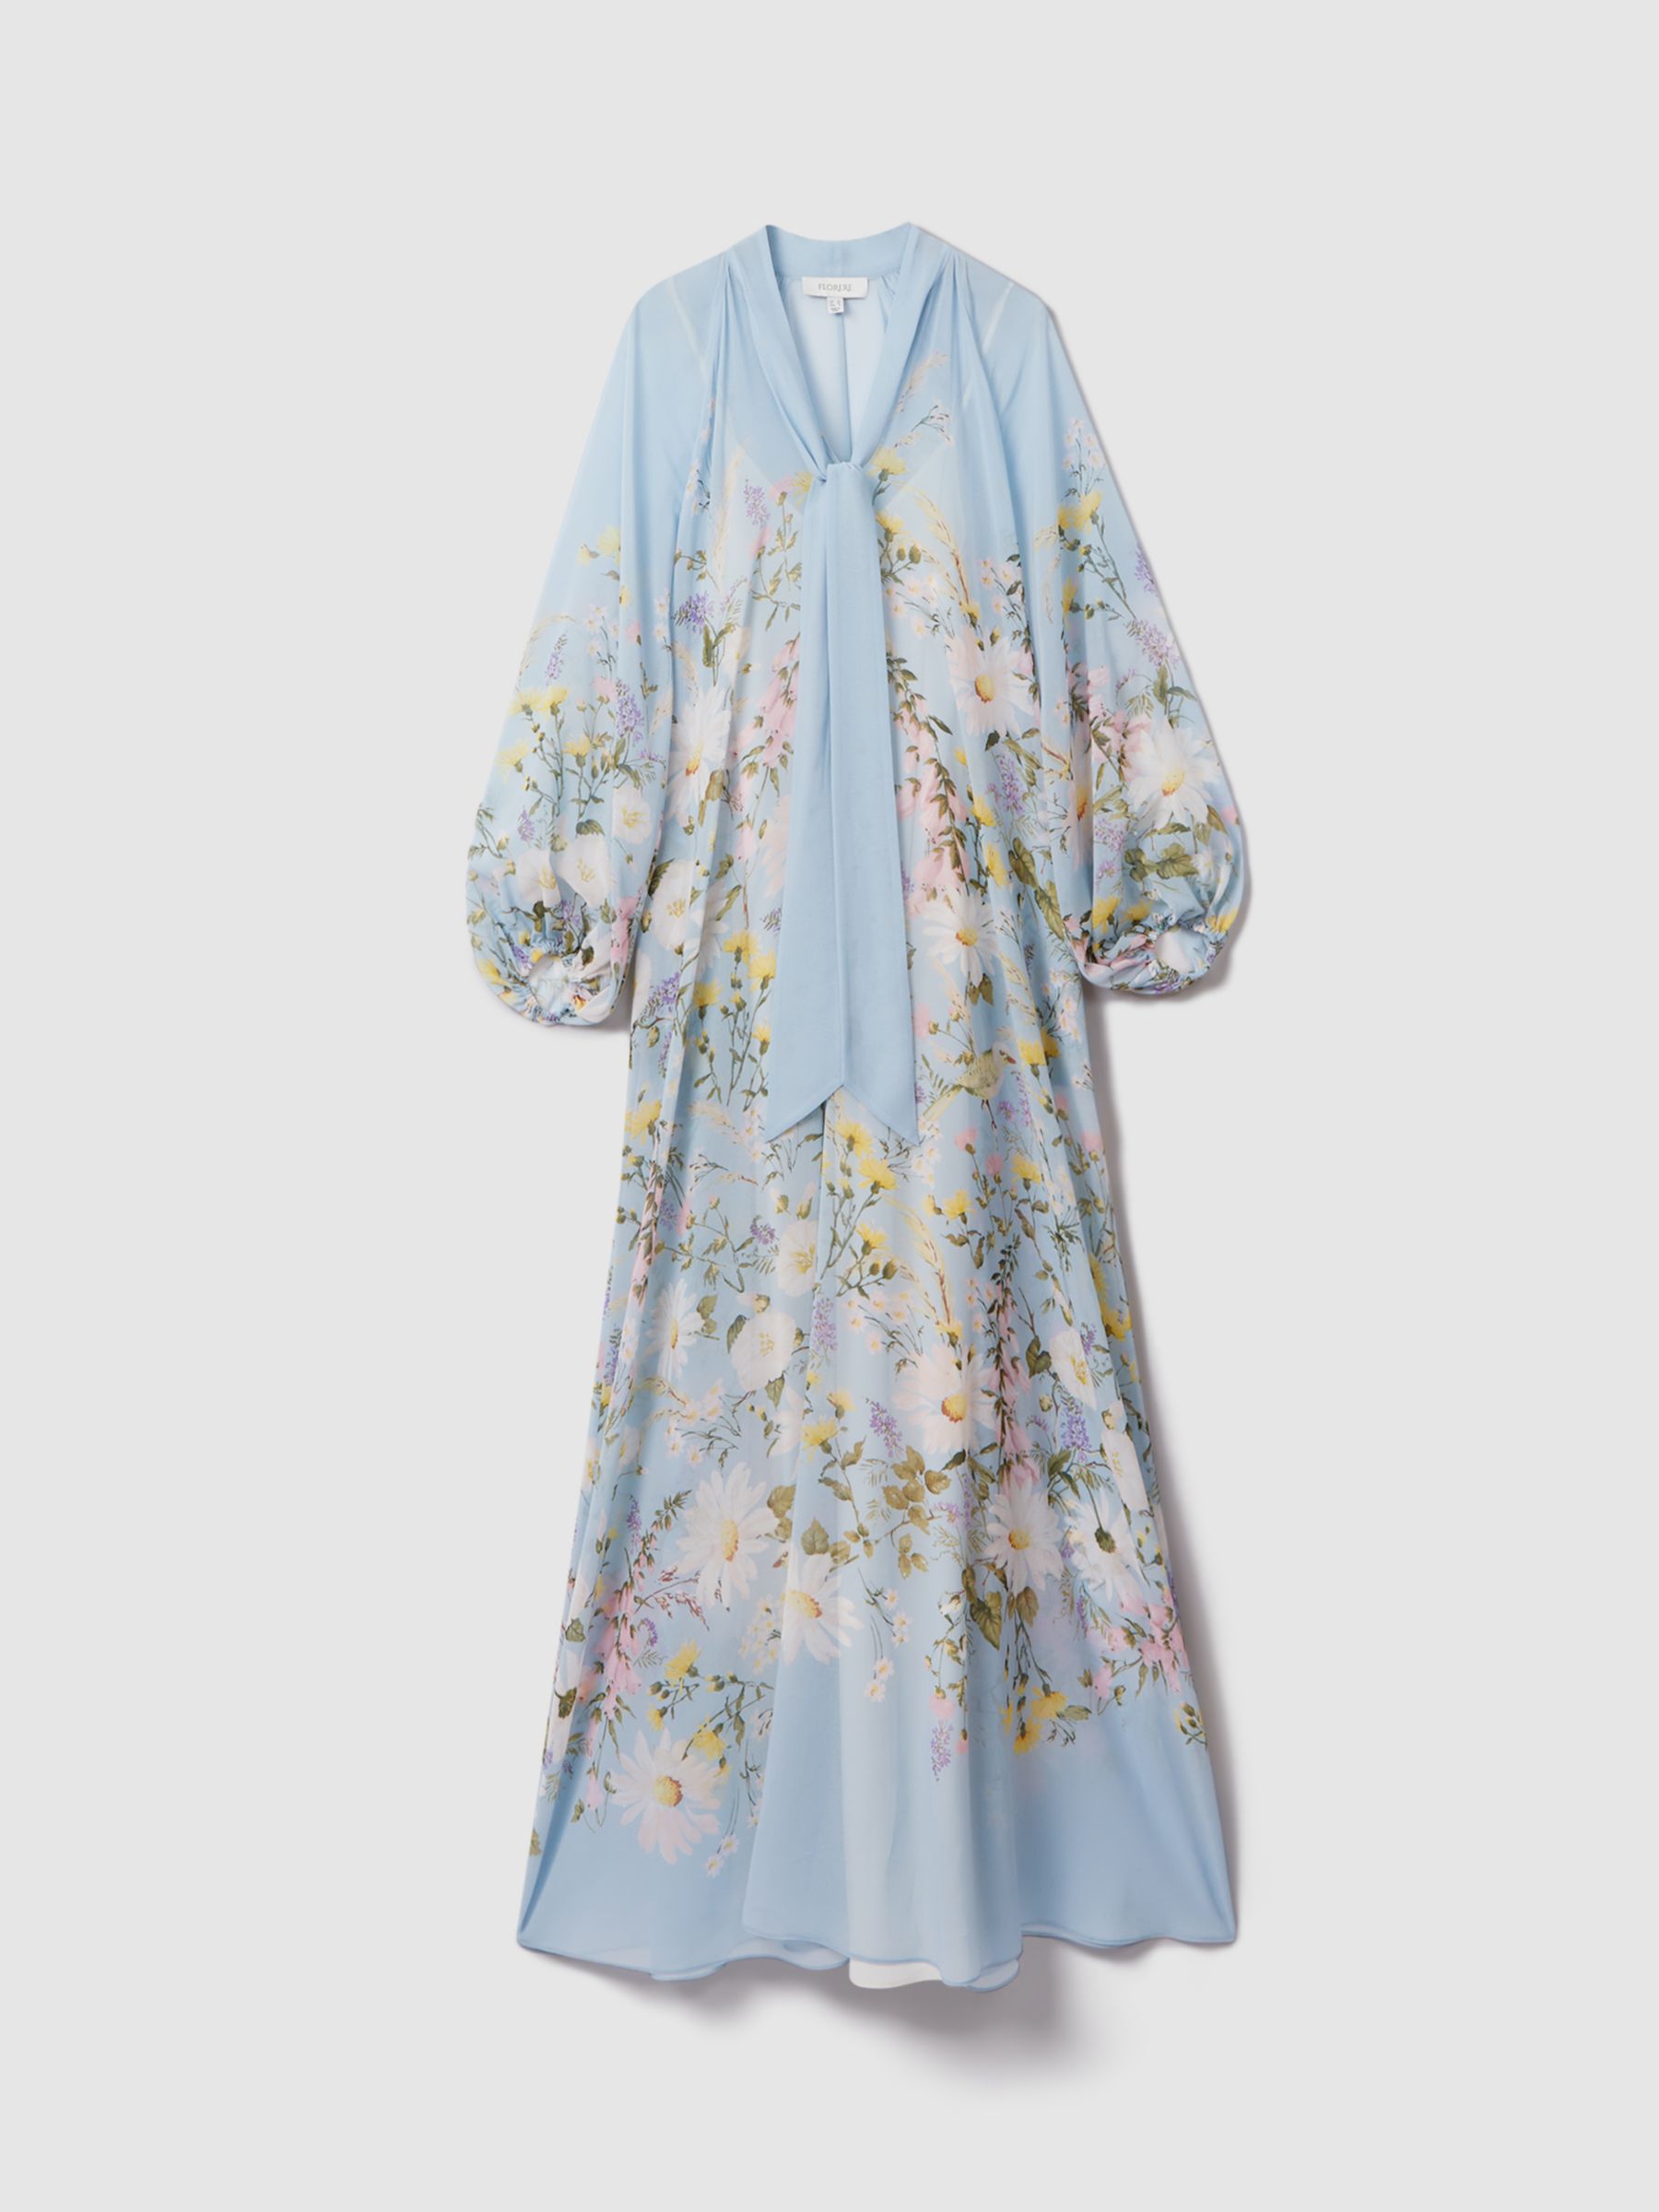 FLORERE Tie Neck Floral Maxi Dress, Pale Blue, 12